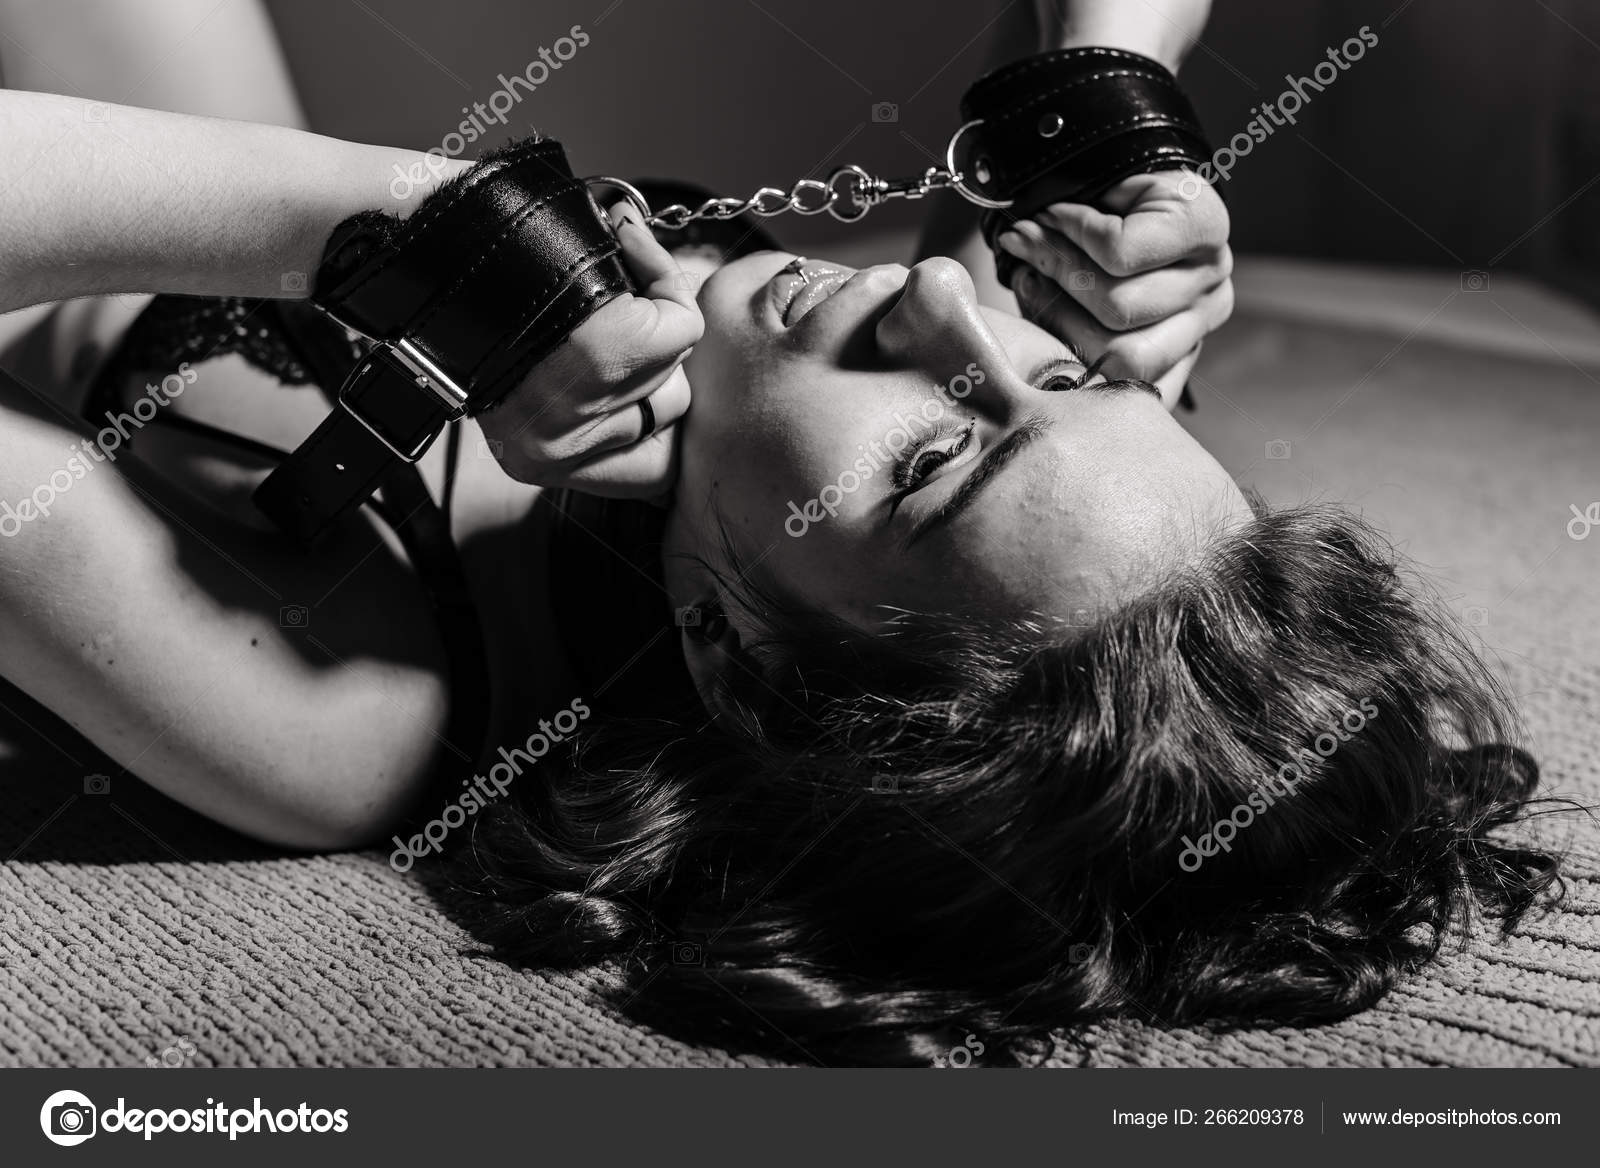 Молодая девушка в сексуальном белье, лежащая на кровати в наручниках. БДСМ  игры и развлечения. Сексуальное извращение . стоковое фото ©inside-studio  266209378